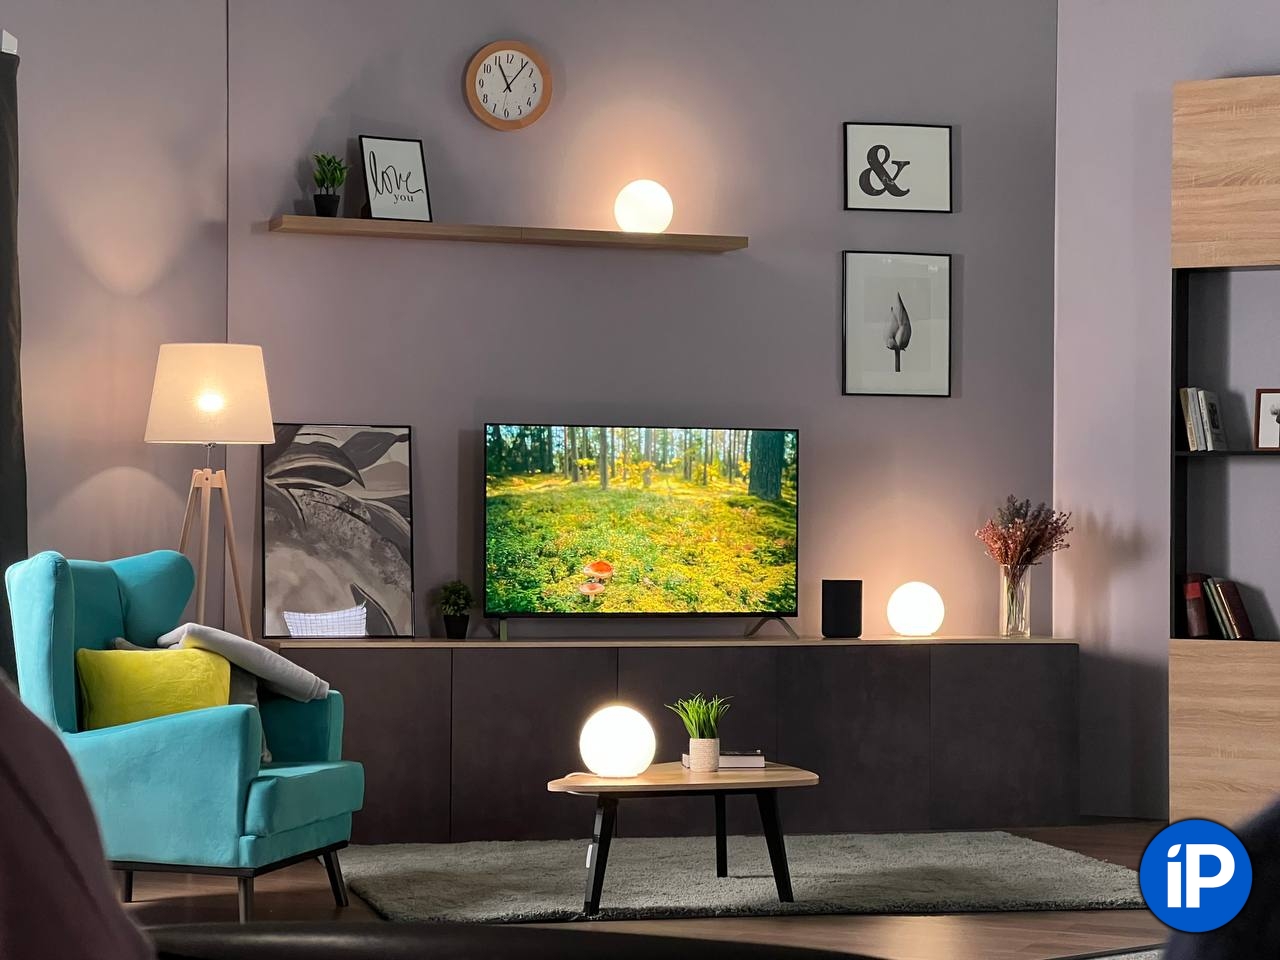 Яндекс запустил продажу умных телевизоров с 4K и HDR всего за 30 тысяч рублей